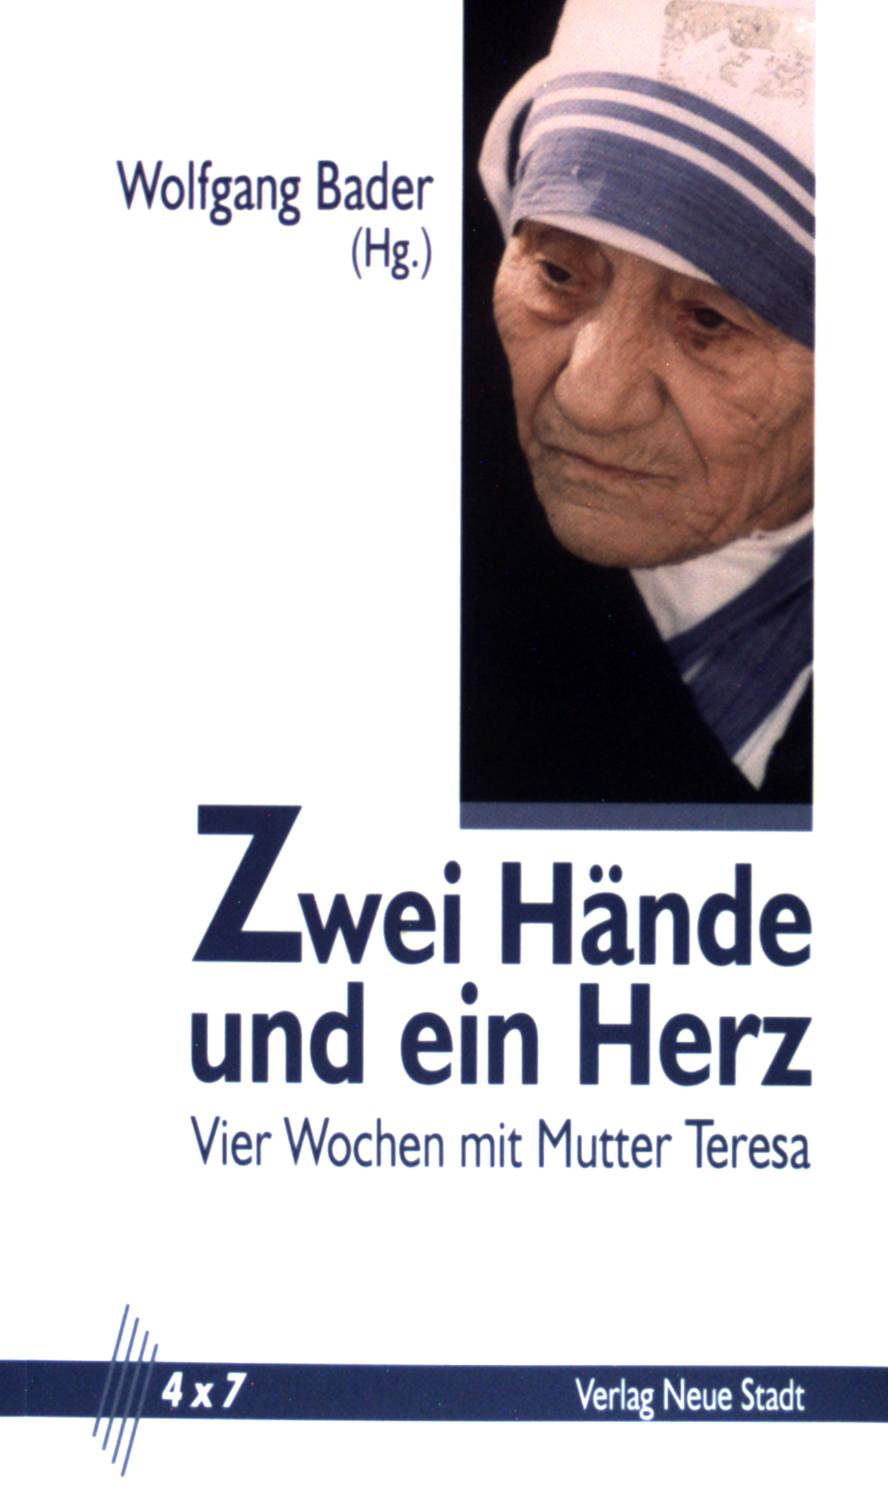 Zwei Hände und ein Herz - Vier Wochen mit Mutter Teresa. (4 x 7) - Bader, Wolfgang